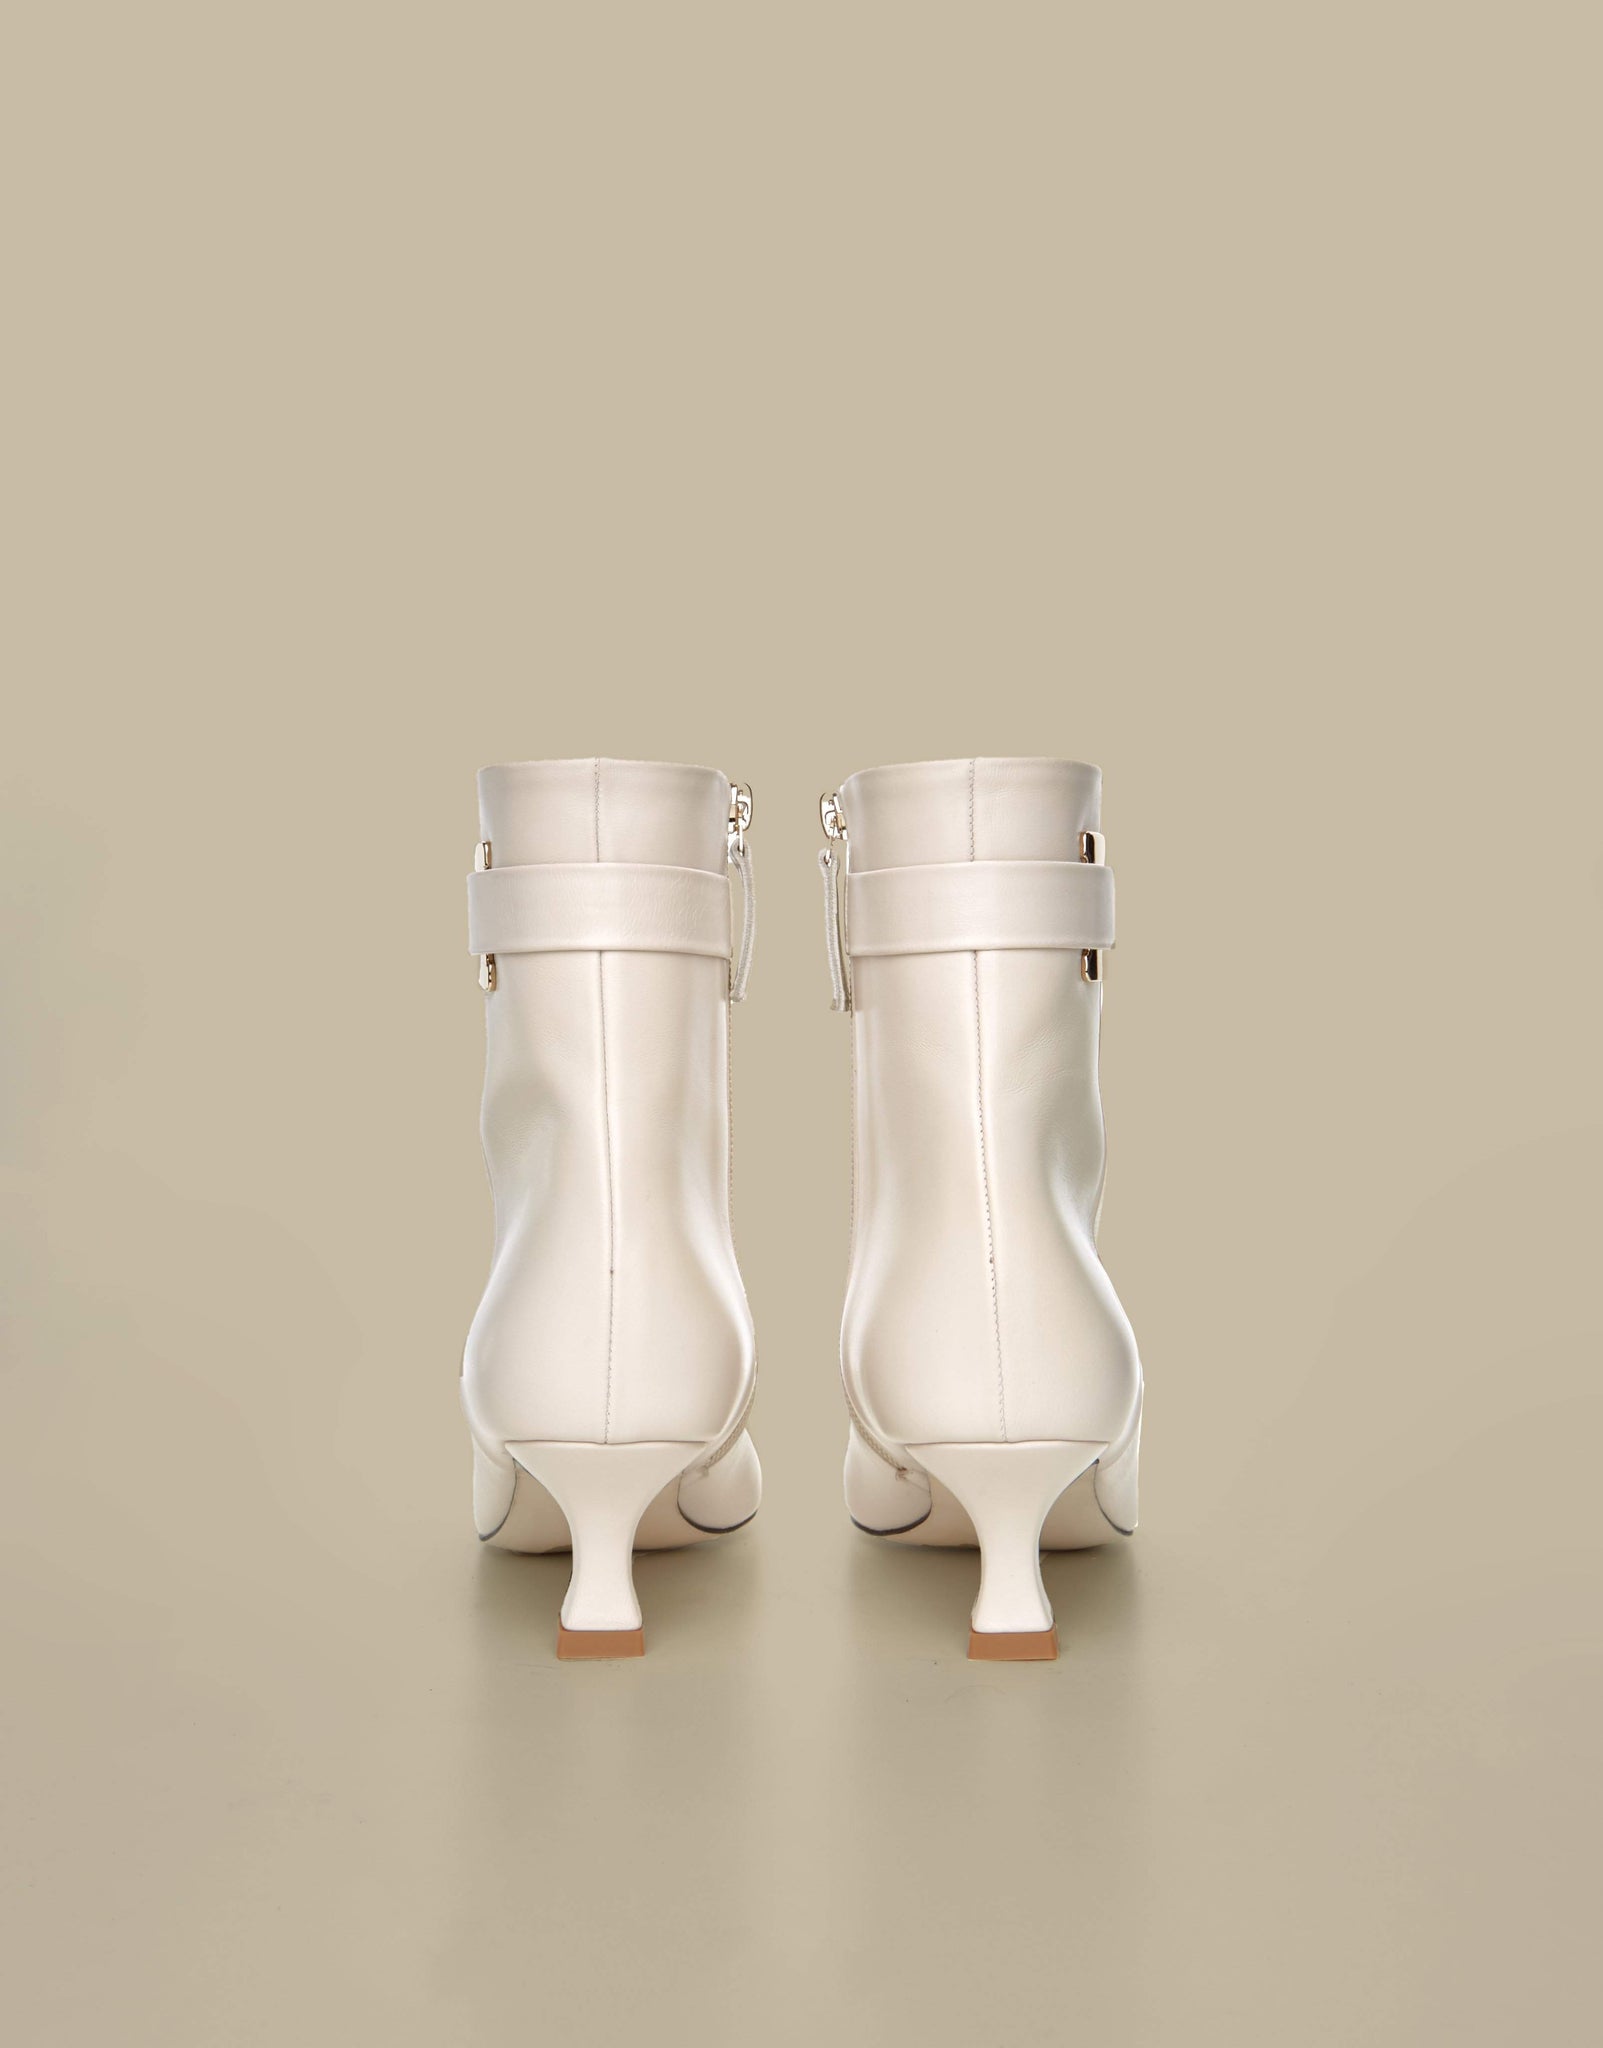 Metz Ankle Boots-Off White - Je la connais